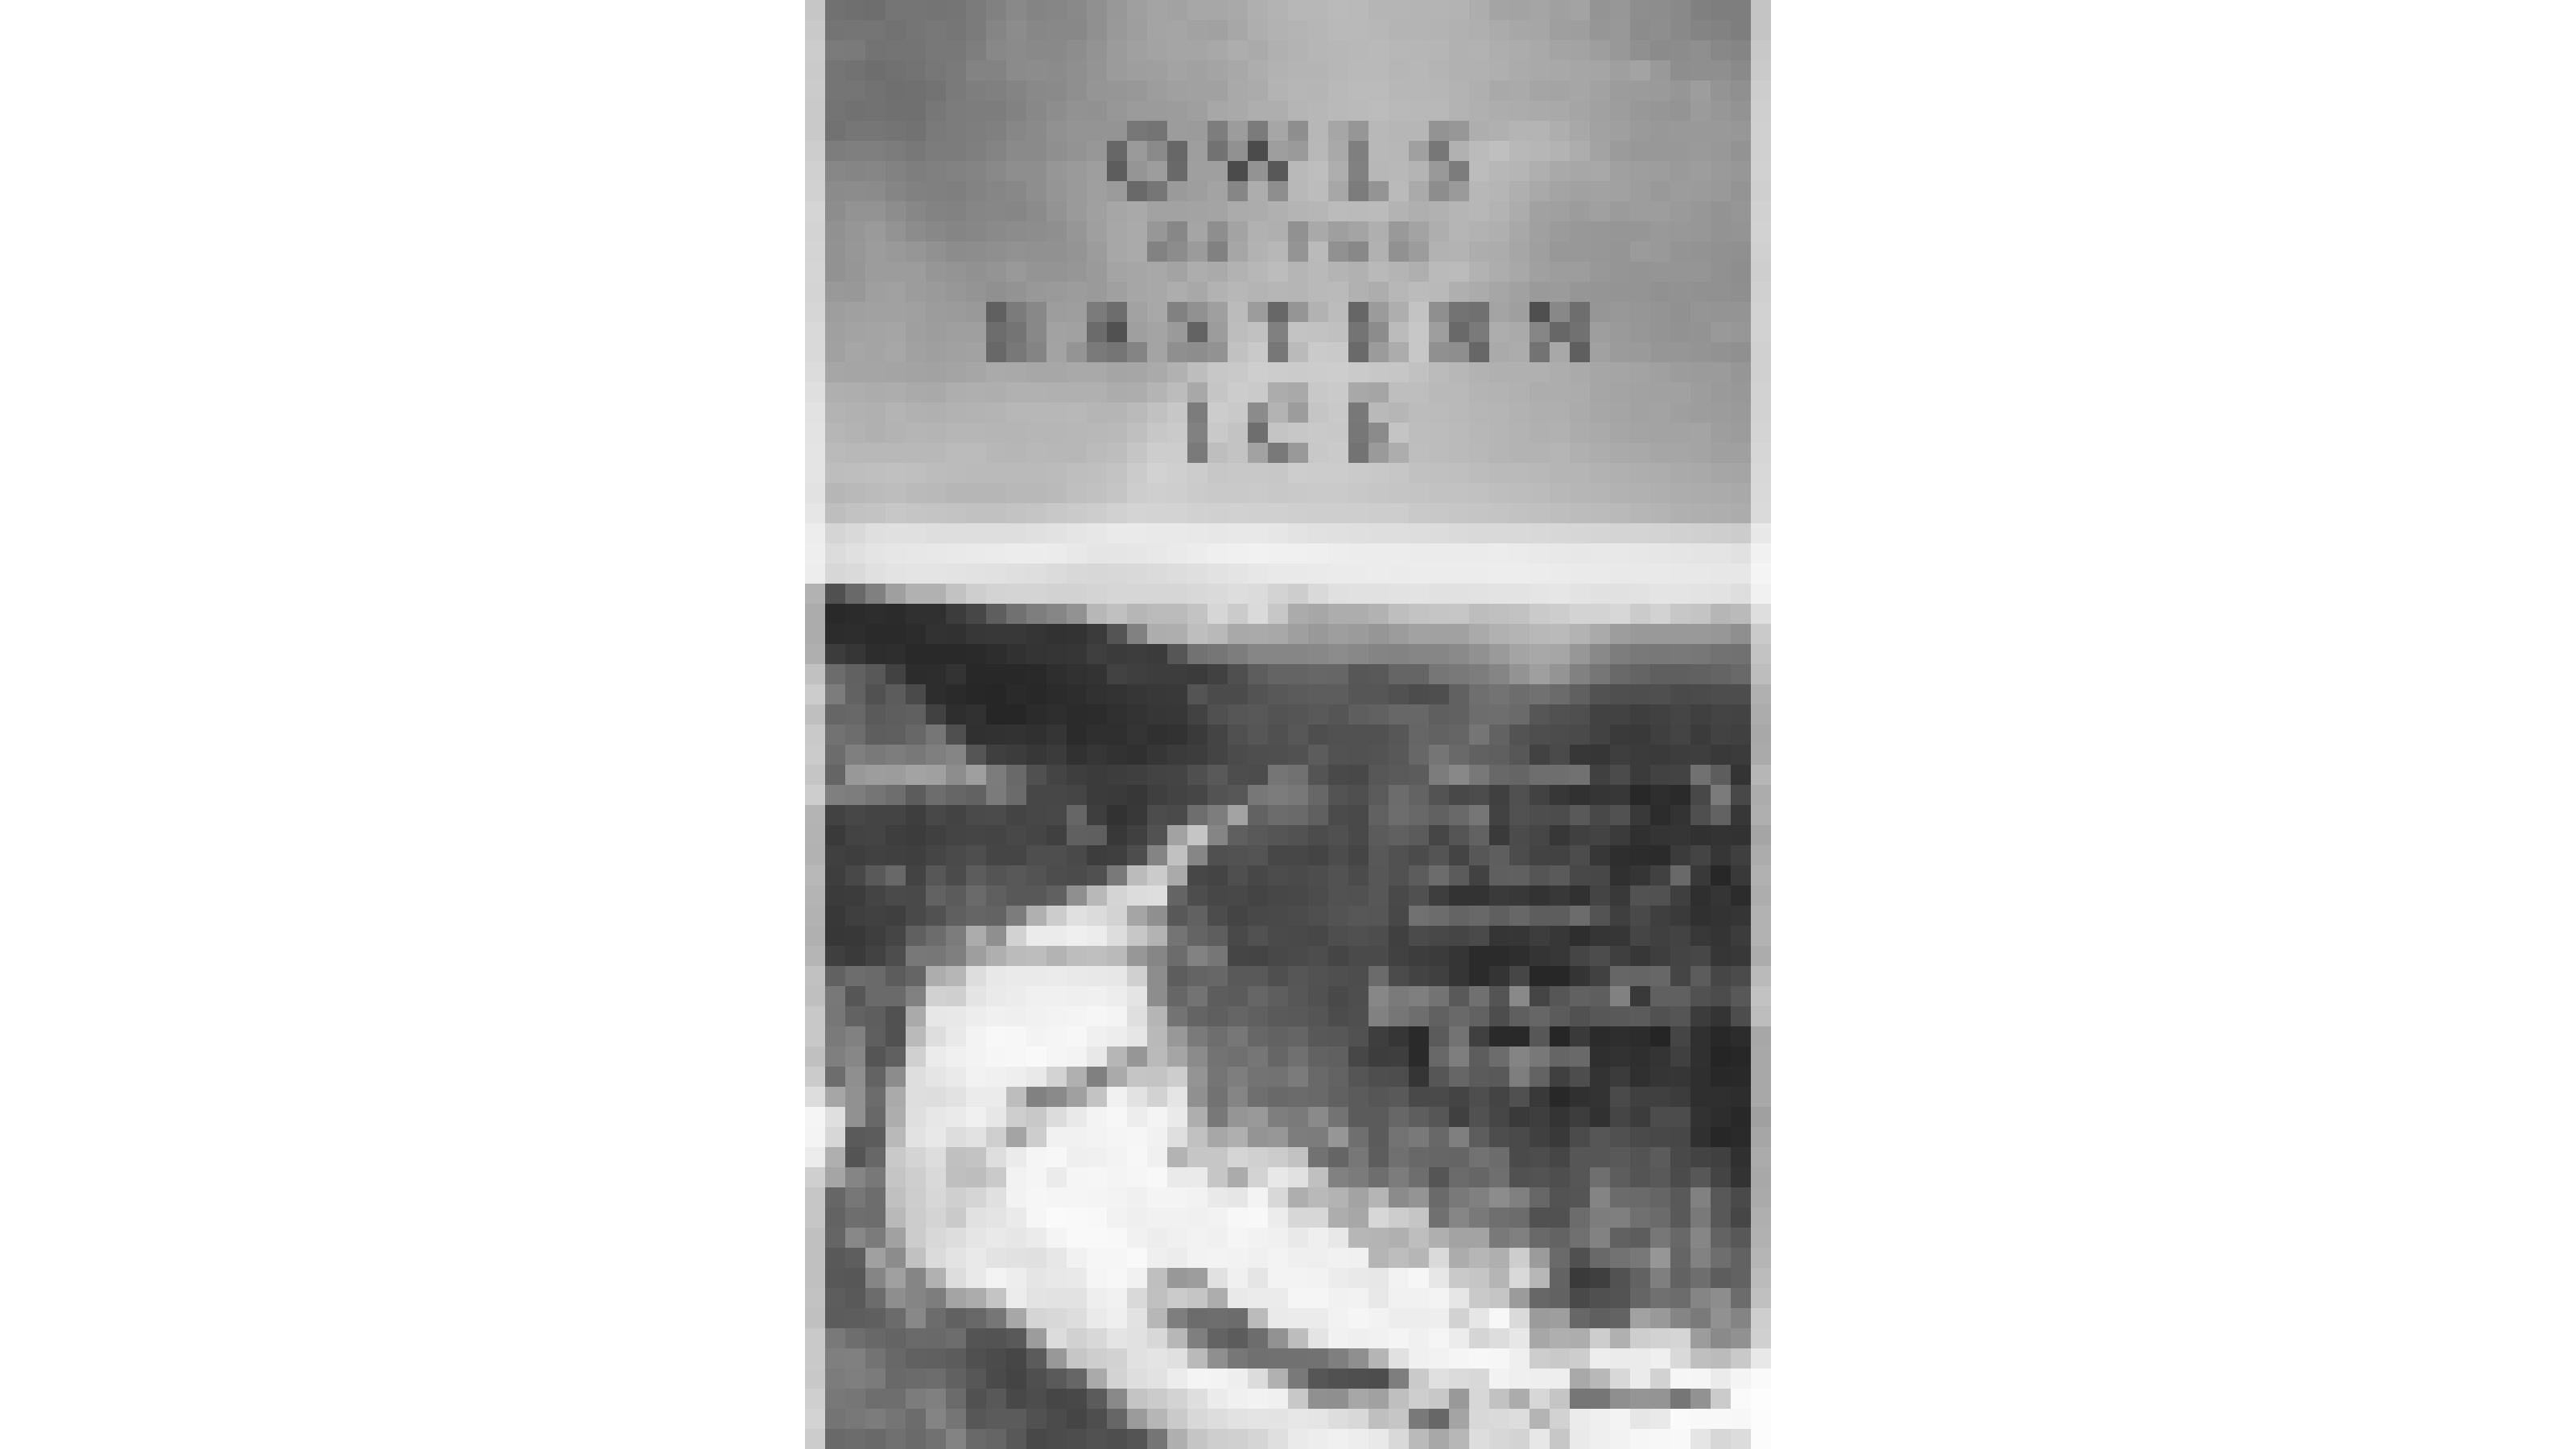 Schwarz-weiß-Cover der britischen Fassung von Jonathan Slaght's Buch „Owls of the Eastern Ice“. Zu sehen ist ein vereister Fluss in einem bewaldeten Tal. Mit freundlicher Genehmigung des Verlags